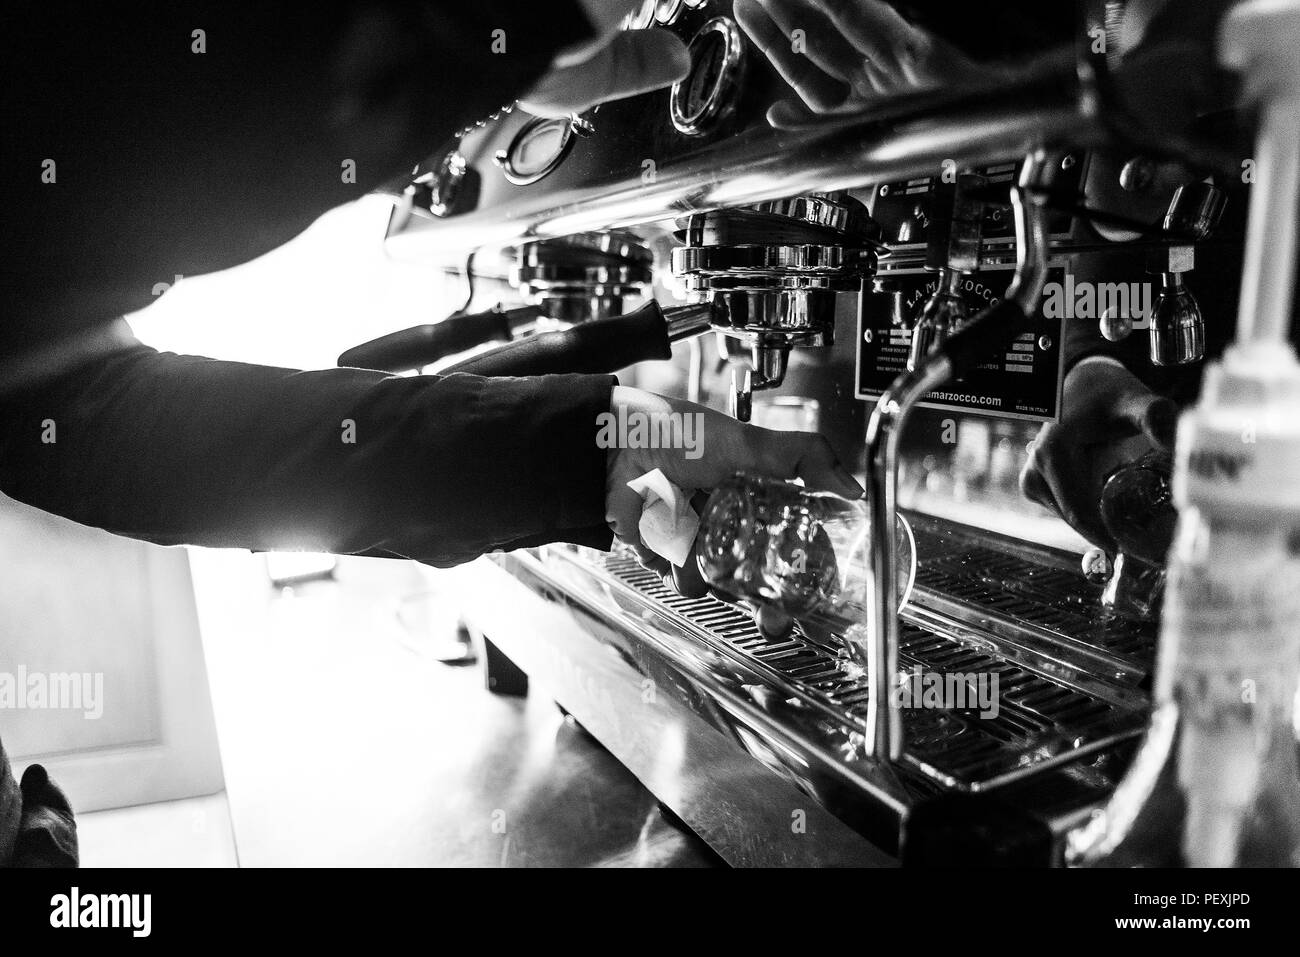 https://c8.alamy.com/compes/pexjpd/hacer-cafe-espresso-bw-en-blanco-y-negro-con-detalle-de-cierre-de-la-maquina-moderna-cafeteria-y-gafas-pexjpd.jpg